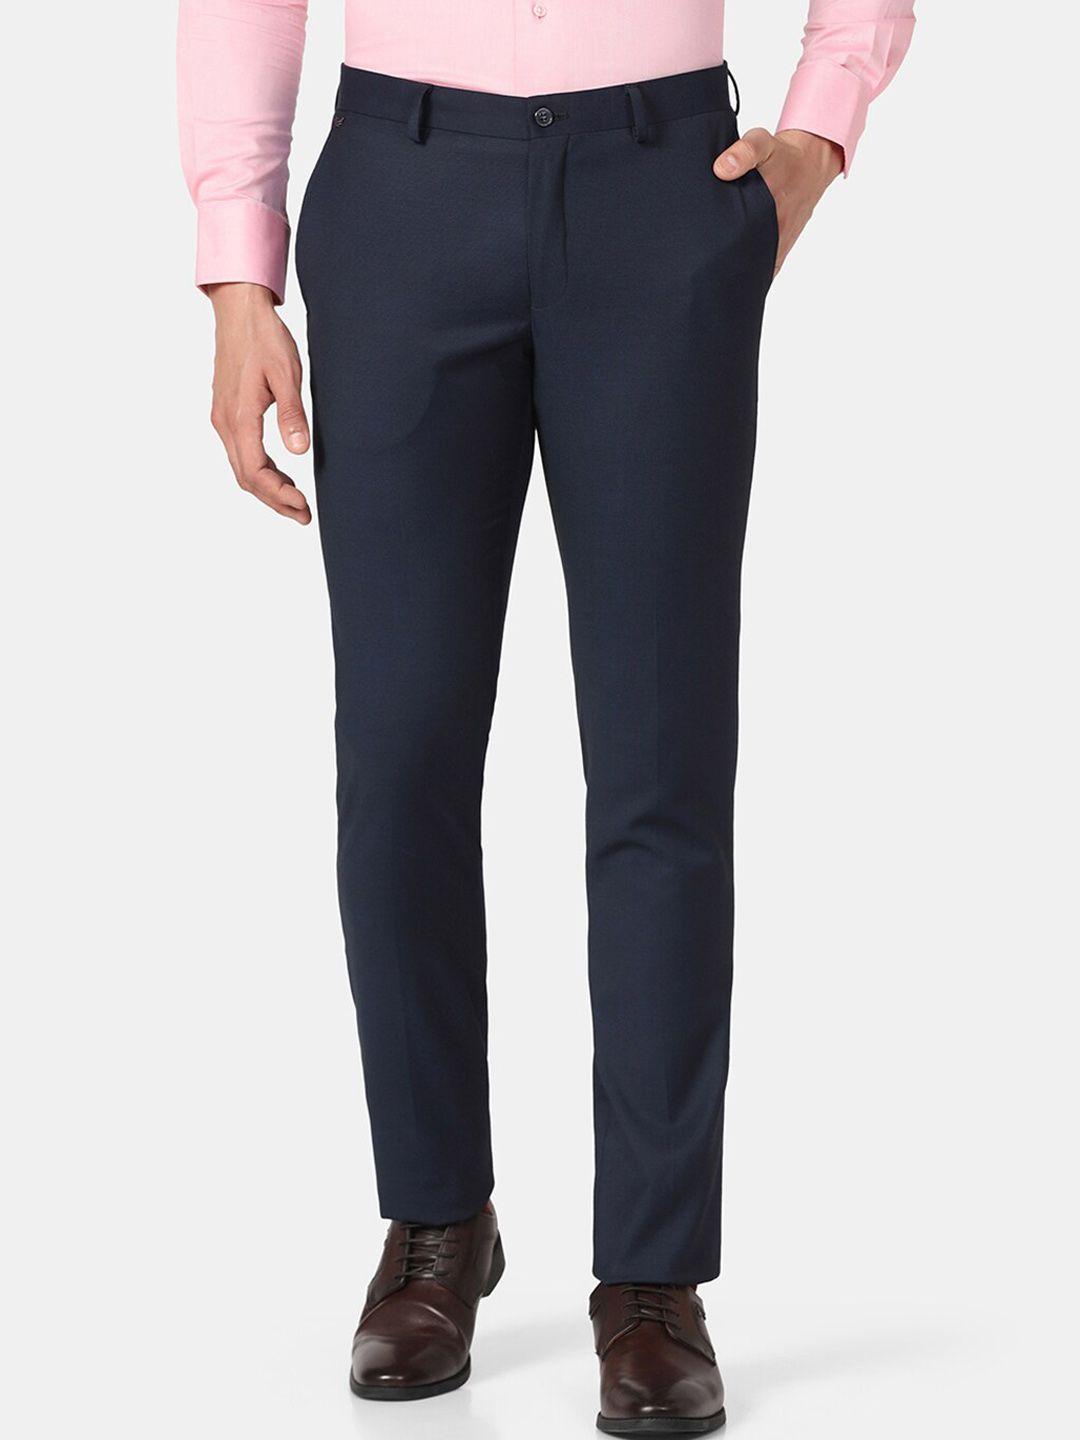 blackberrys-men-low-rise-b-91-slim-fit-formal-trousers